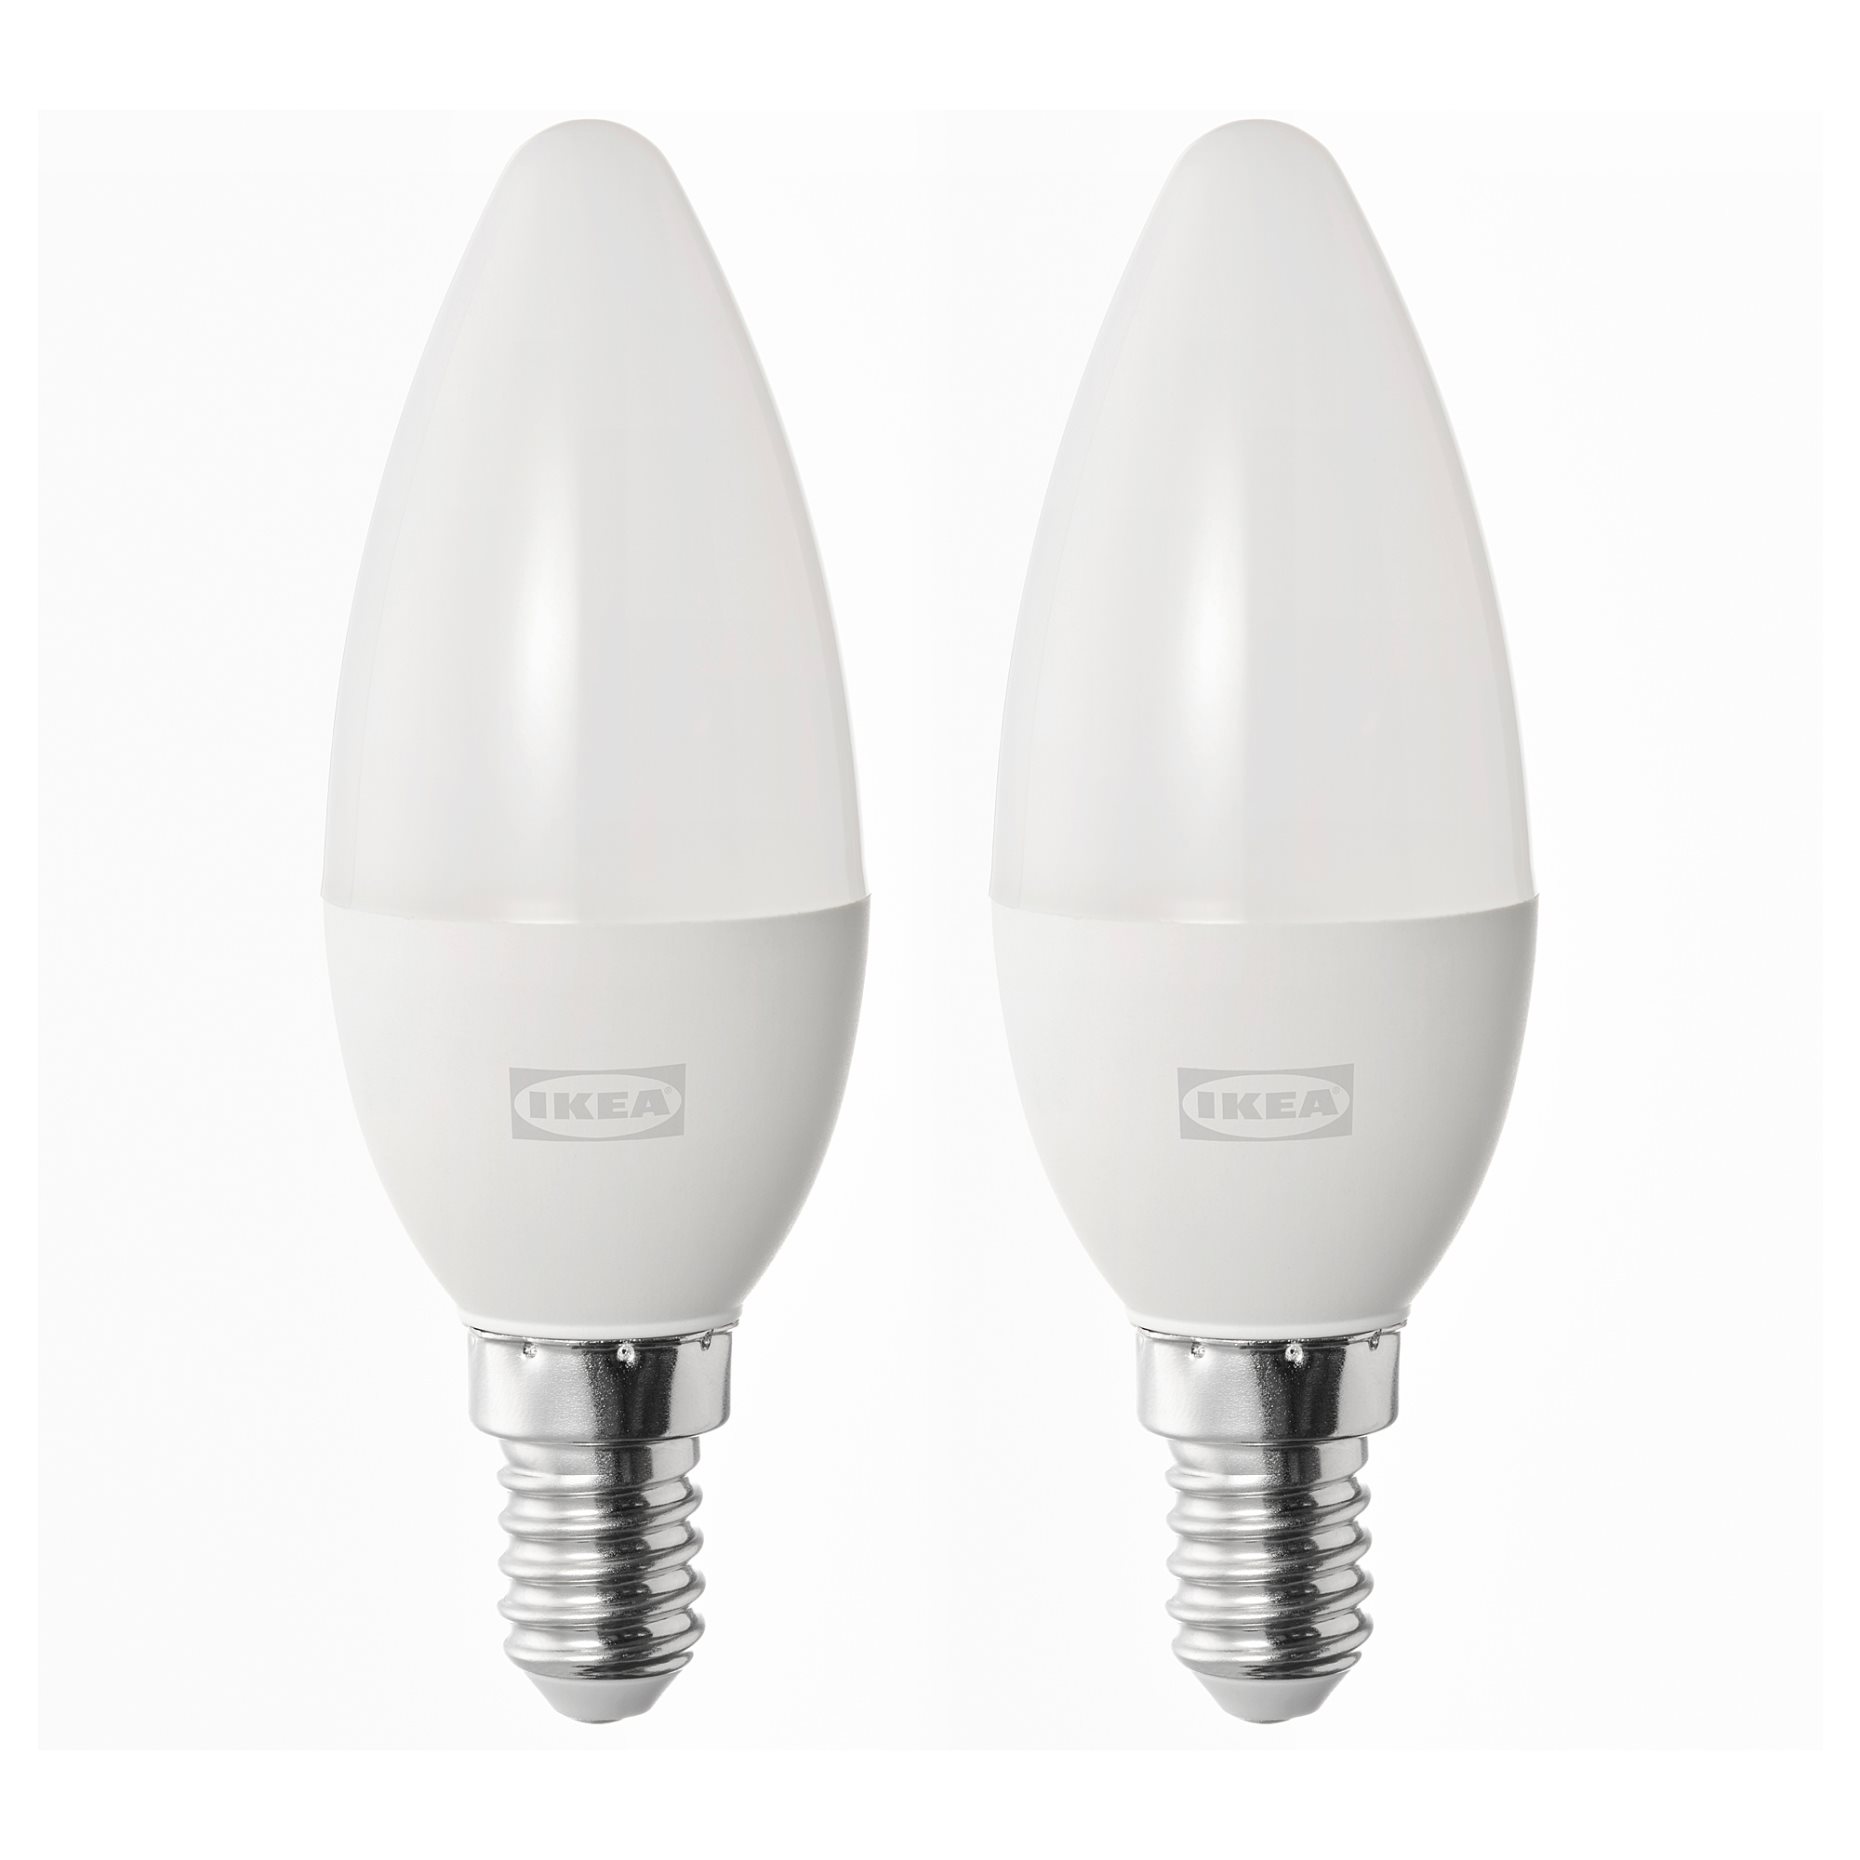 SOLHETTA, LED bulb E14 470 lumen/chandelier, 2 pack, 004.987.35